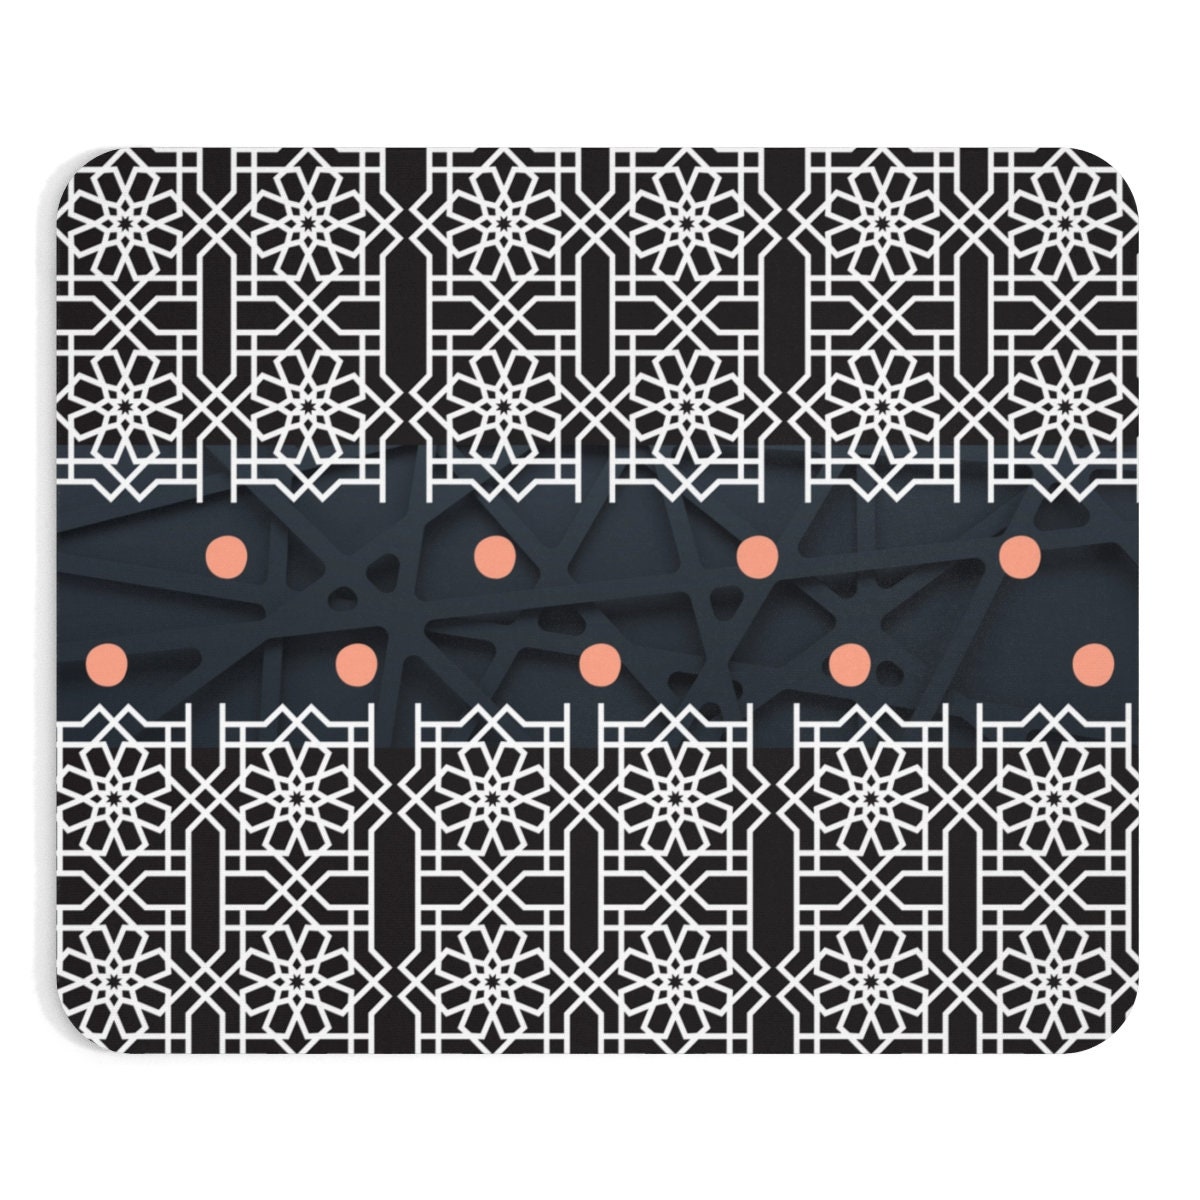 JSDART Motif en treillis noir moderne élégant avec grille géométrique en  treillis monochrome Design graphique simple Tapis de souris blanc Tapis de souris  Tapis de souris 22,9 x 25,4 cm 